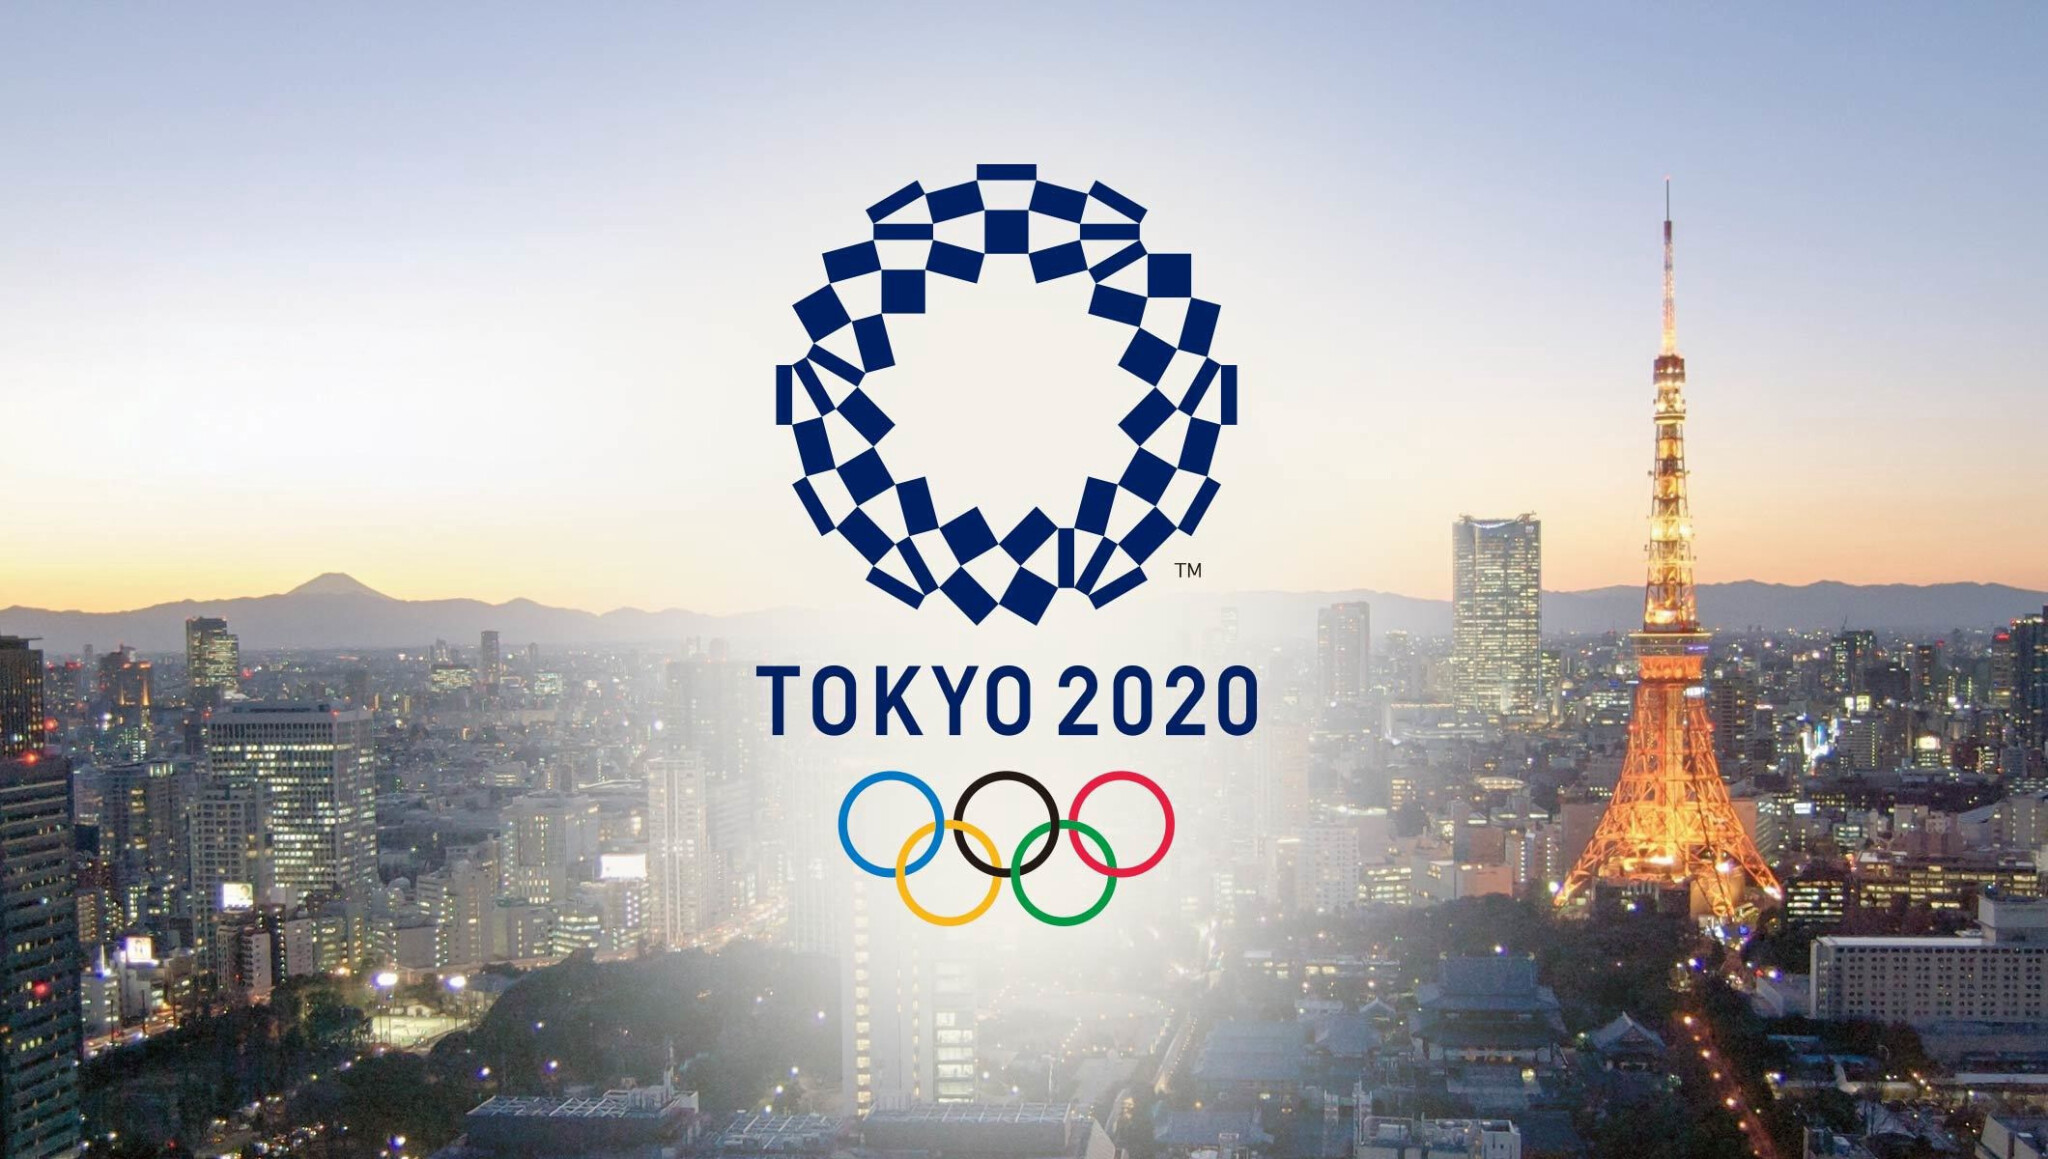 Olympionici budou v Tokiu spát na kartonu. Pořadatelé fandí udržitelnosti